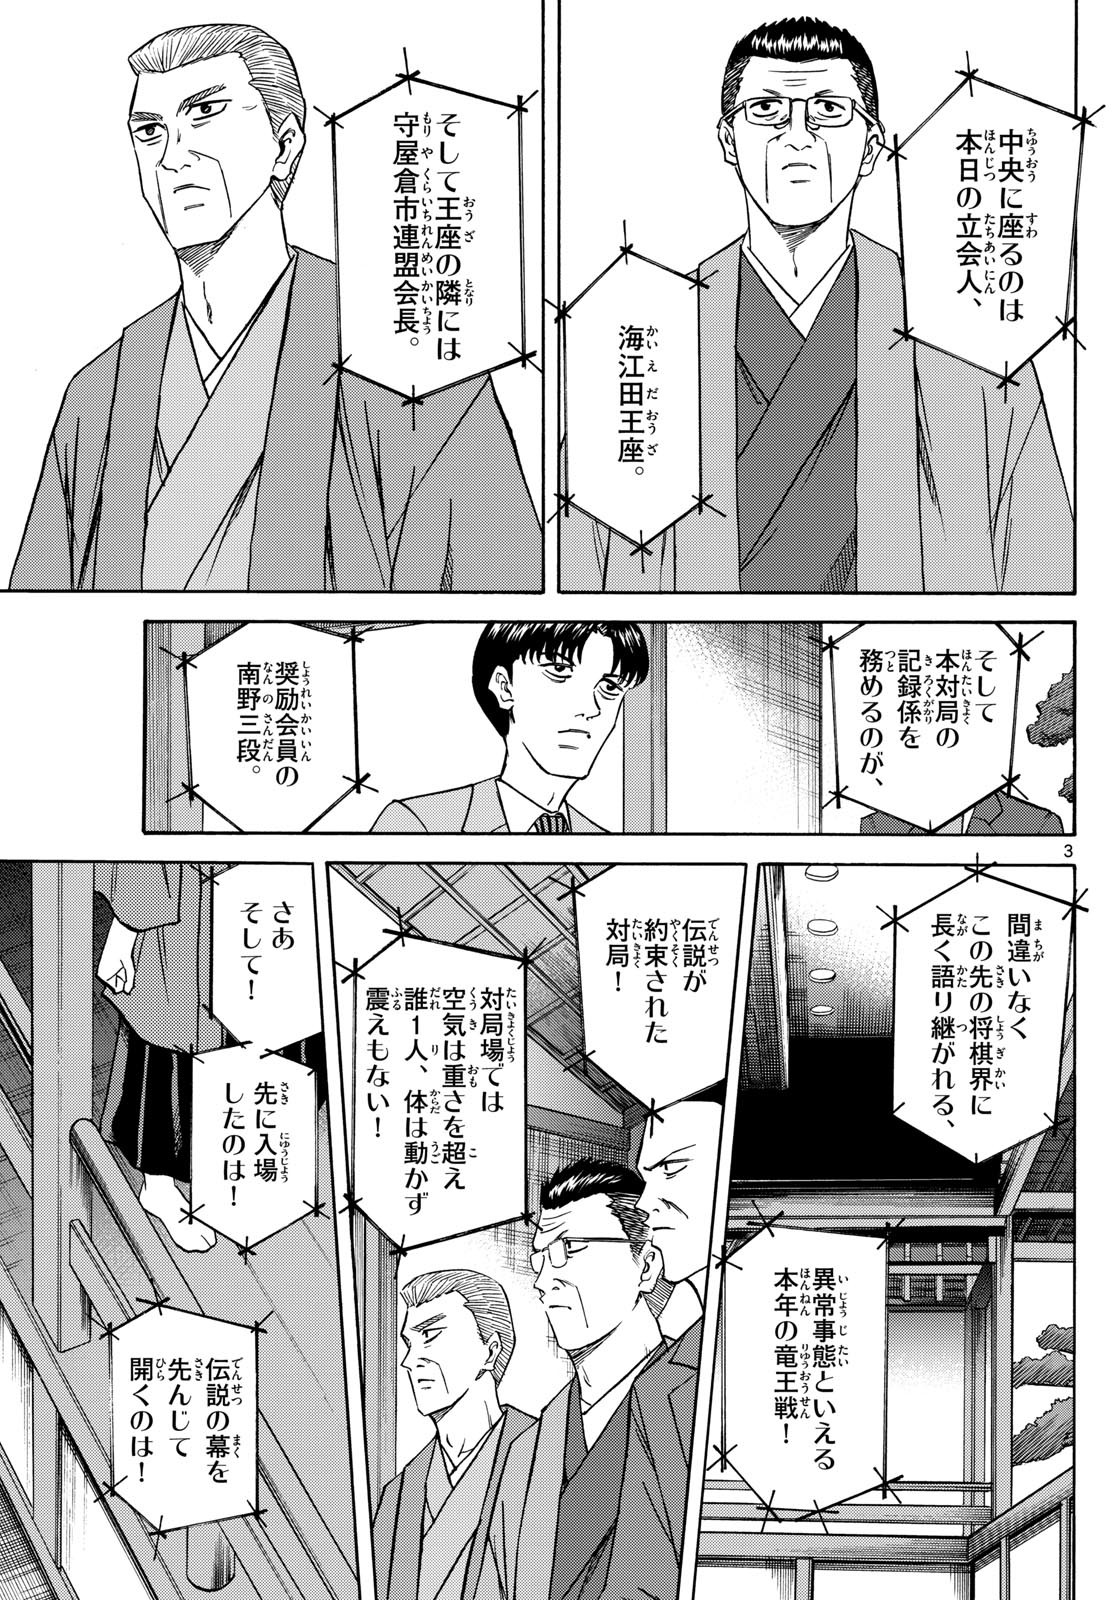 Ryu-to-Ichigo - Chapter 154 - Page 3